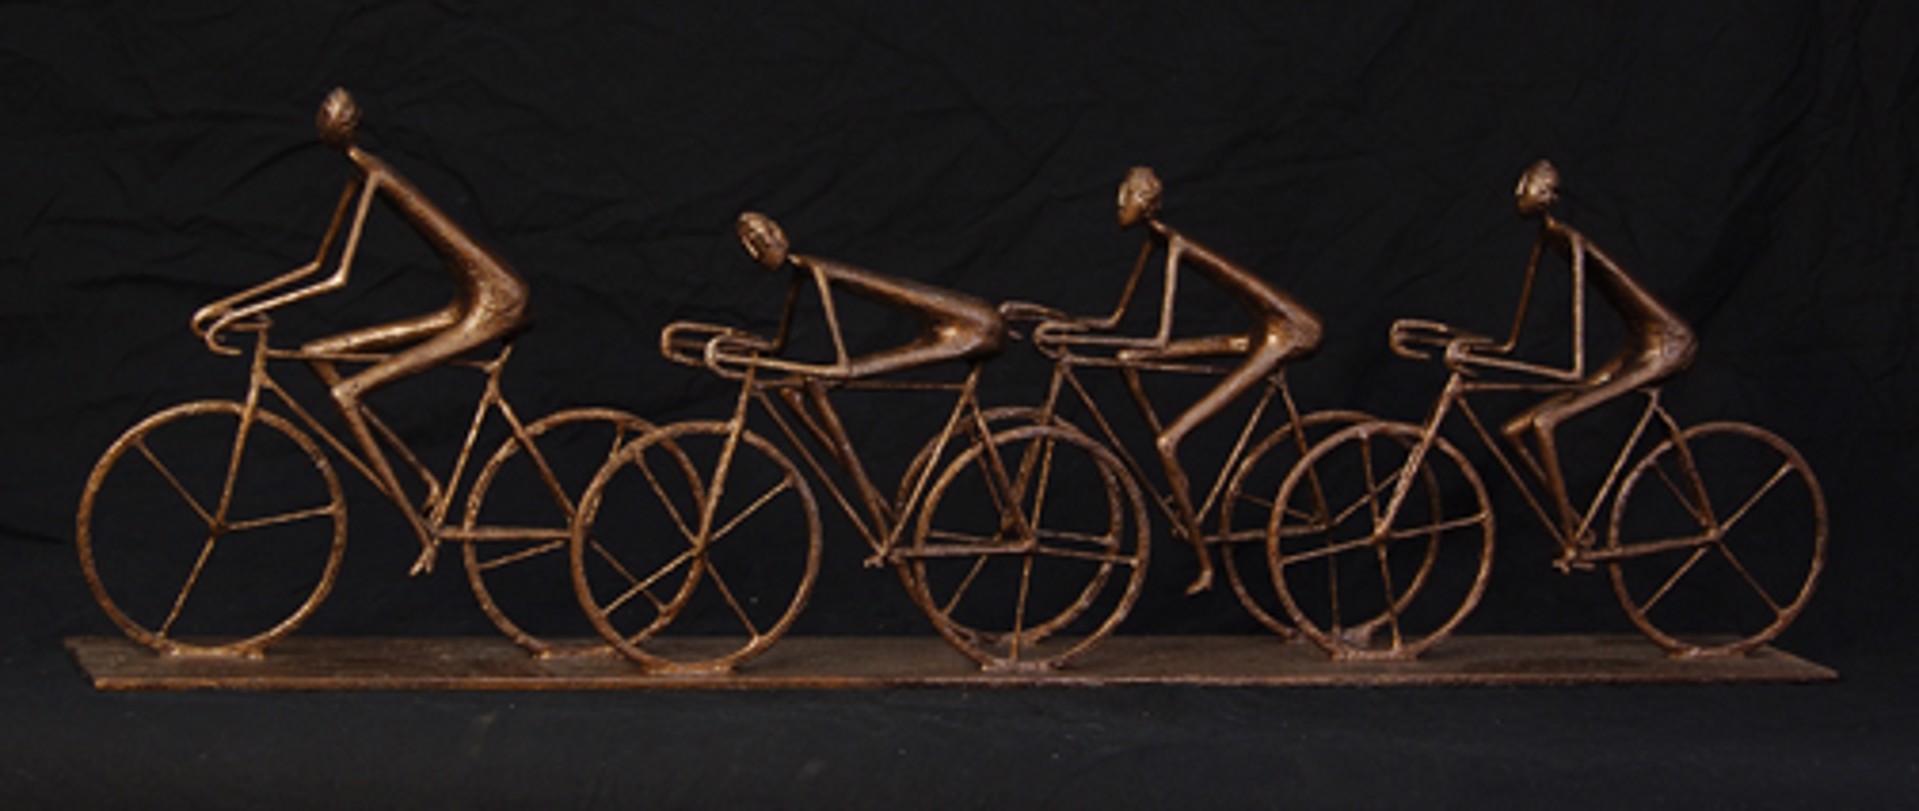 4 Bicyclists by Allen WYNN